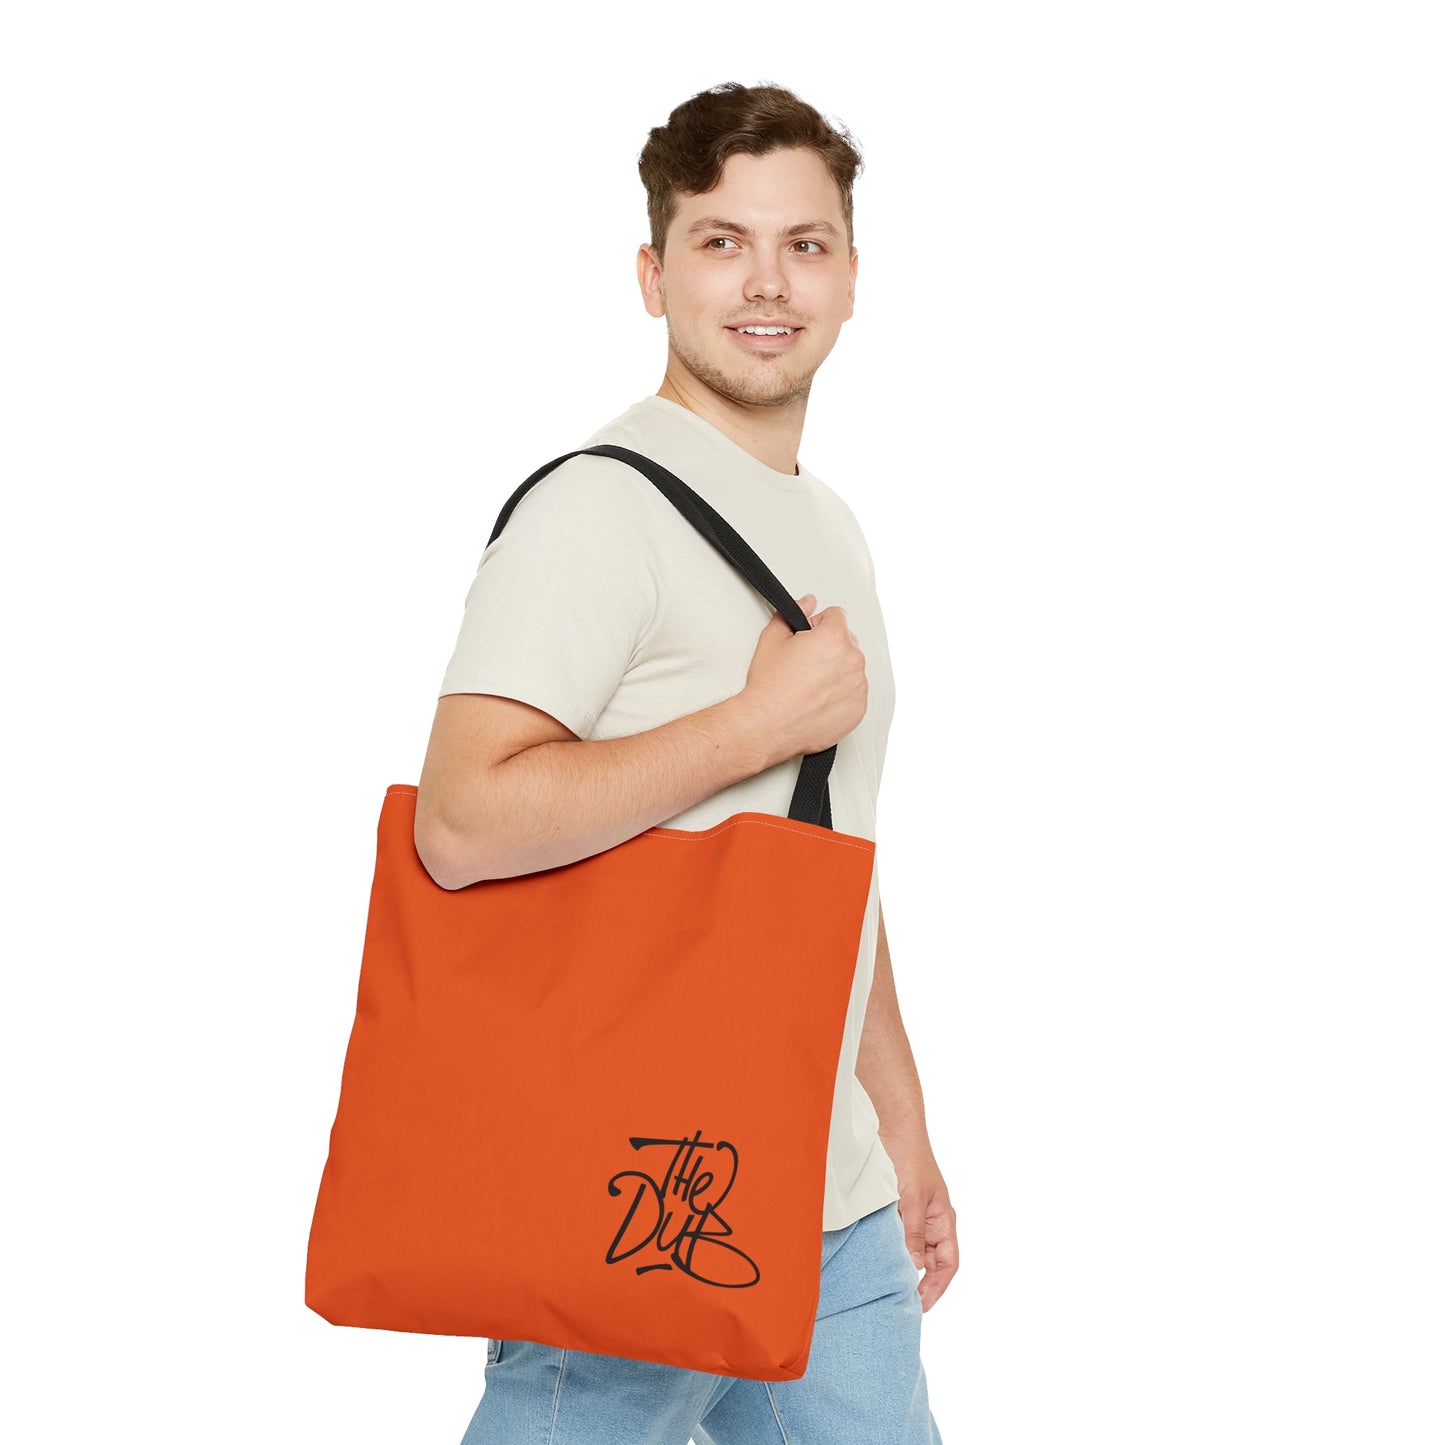 DubPDXGear - Orange DubSac Tote Bag